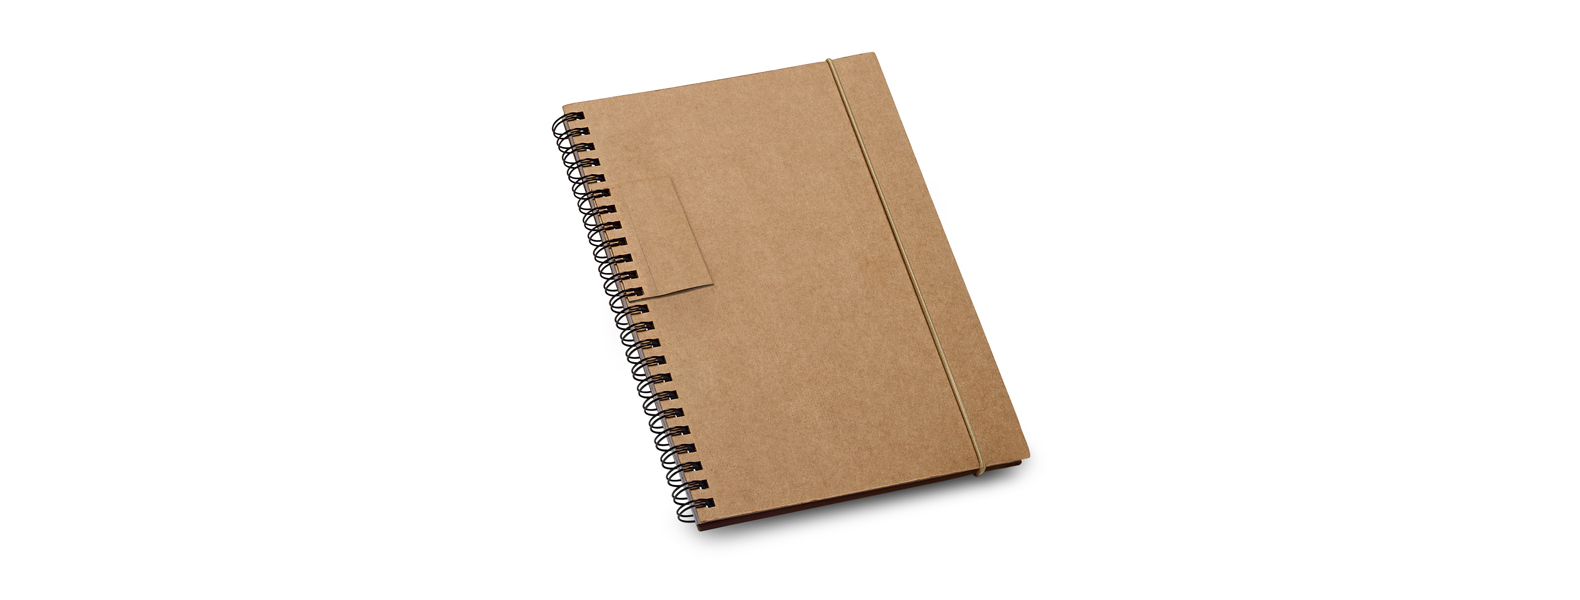 Caderno pautado wire-o bege/preto. Conta com capa dura, 60 folhas pautadas em papel reciclado e espaço para caneta.